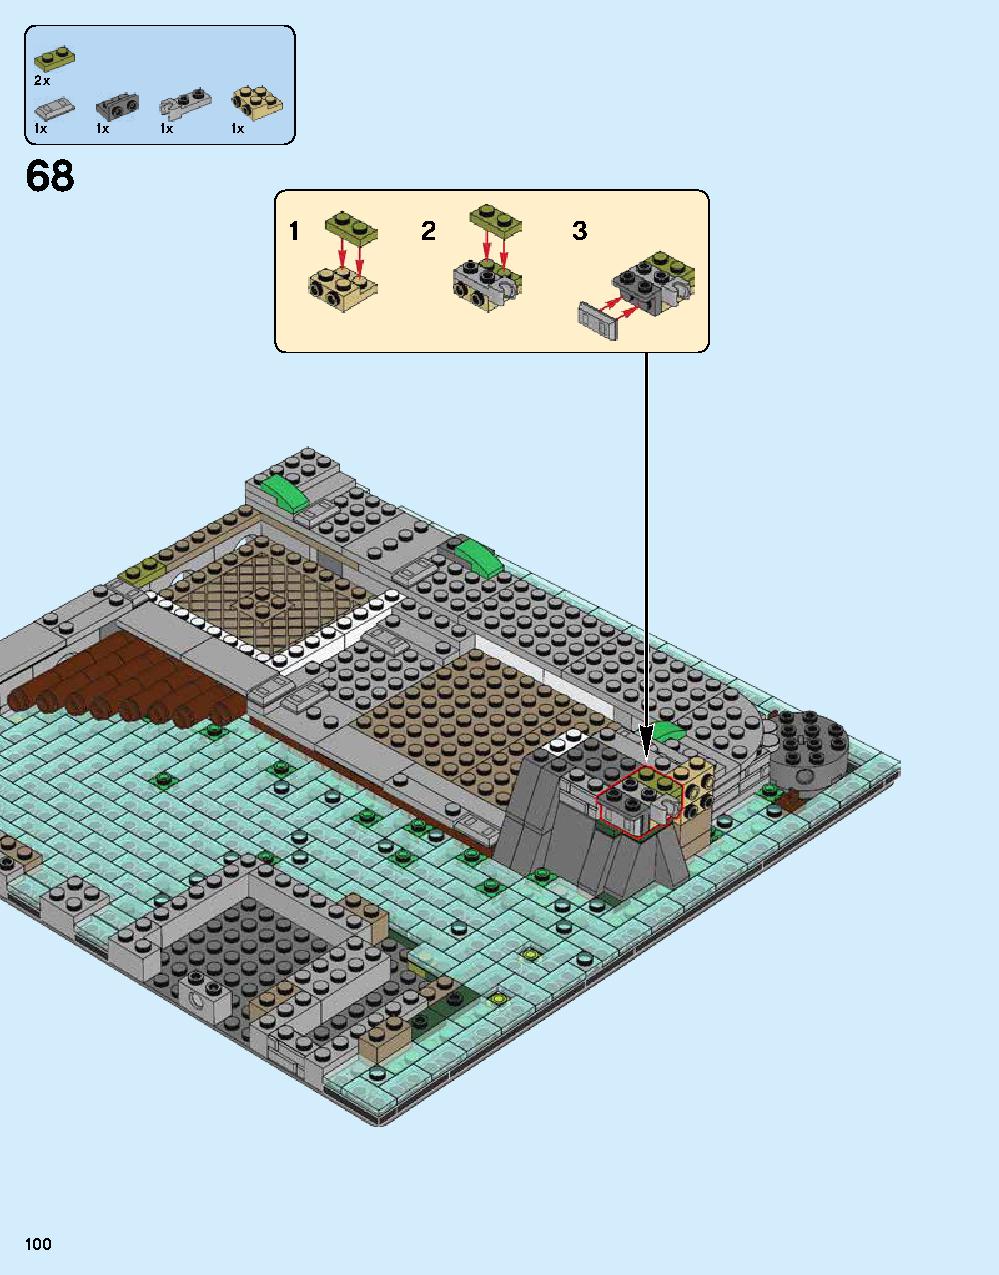 ニンジャゴー シティ 70620 レゴの商品情報 レゴの説明書・組立方法 100 page